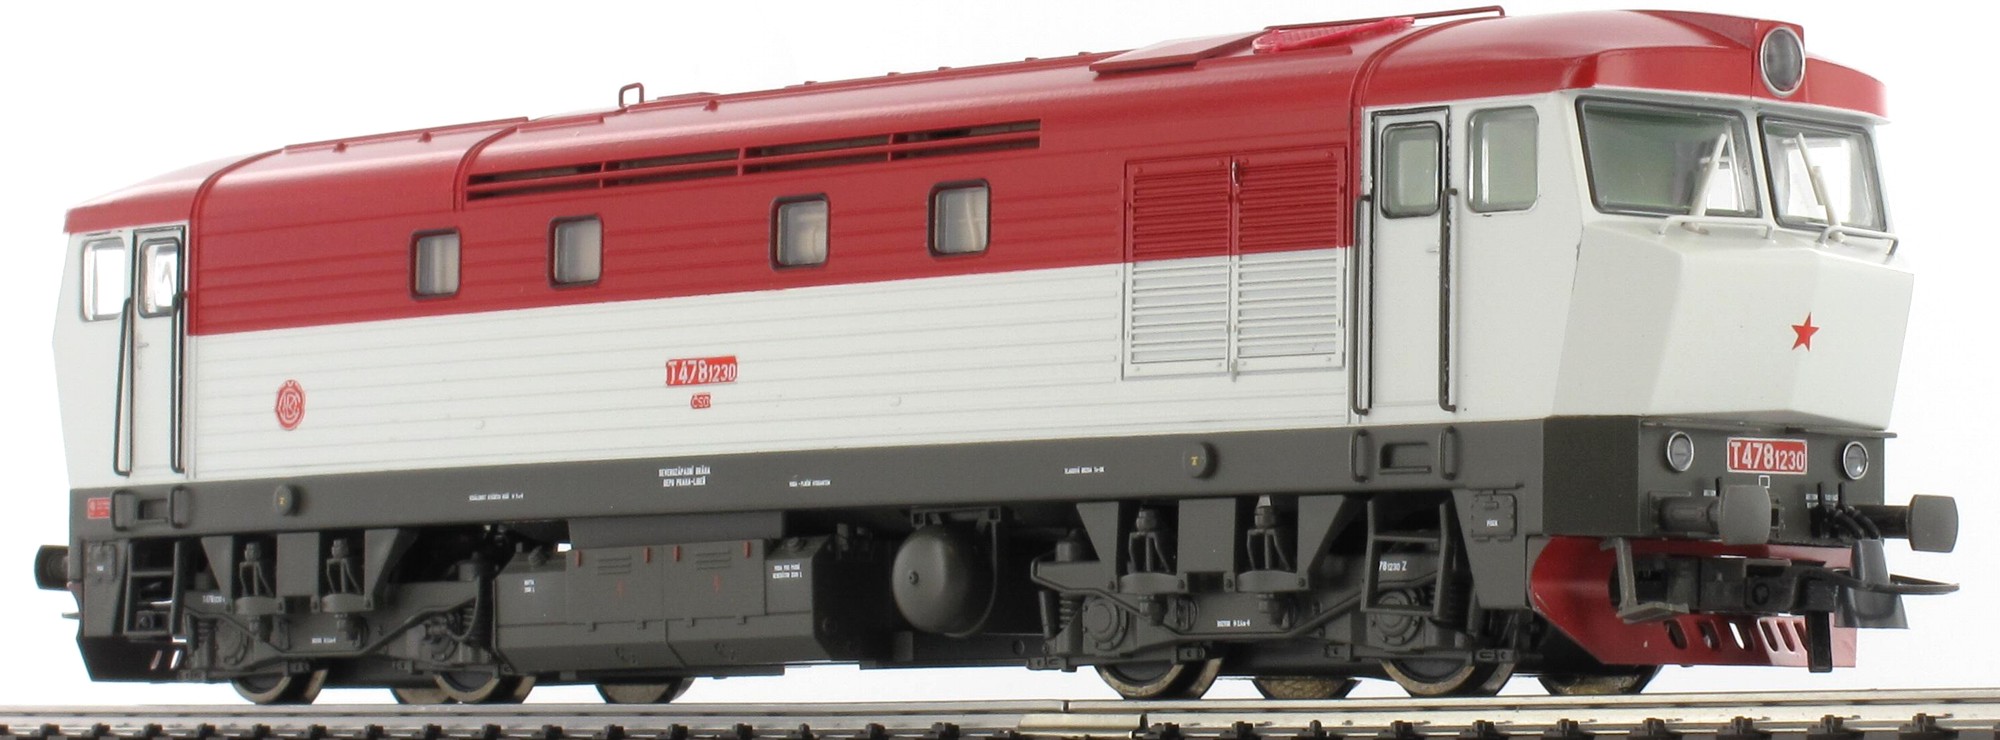 Model dieselové lokomotivy řady T478.1230 ČSD Zvuk poslední kus (HO)